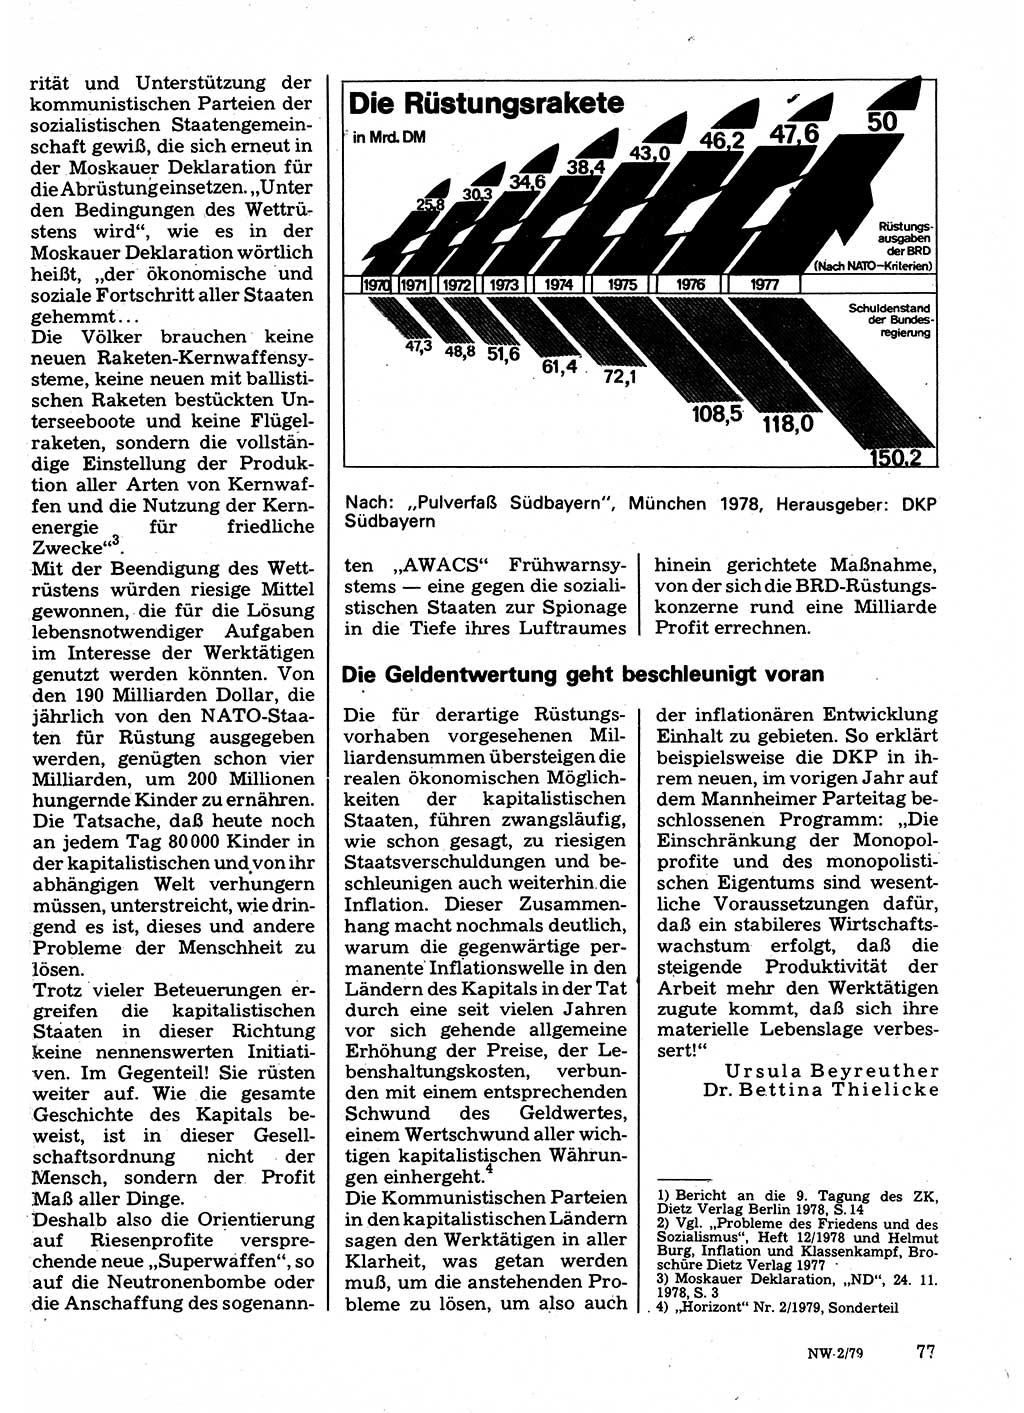 Neuer Weg (NW), Organ des Zentralkomitees (ZK) der SED (Sozialistische Einheitspartei Deutschlands) für Fragen des Parteilebens, 34. Jahrgang [Deutsche Demokratische Republik (DDR)] 1979, Seite 77 (NW ZK SED DDR 1979, S. 77)